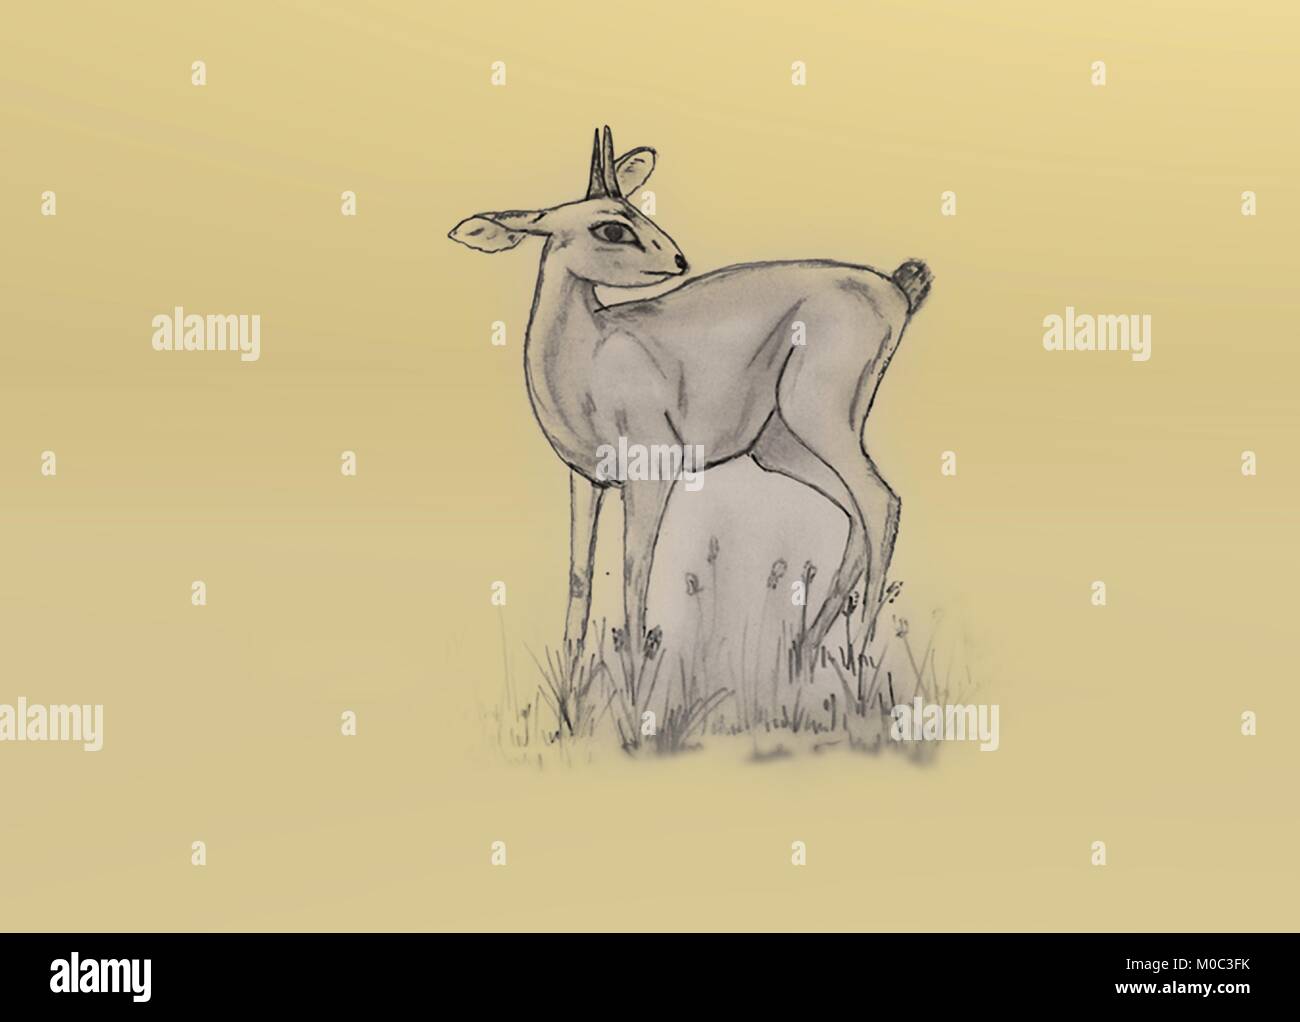 Pequeño antílope steenbok dibujo a lápiz. Imágenes de vida silvestre en suaves y colores pálidos de la naturaleza y los animales.con cuernos de mamíferos africanos. Ilustración del Vector